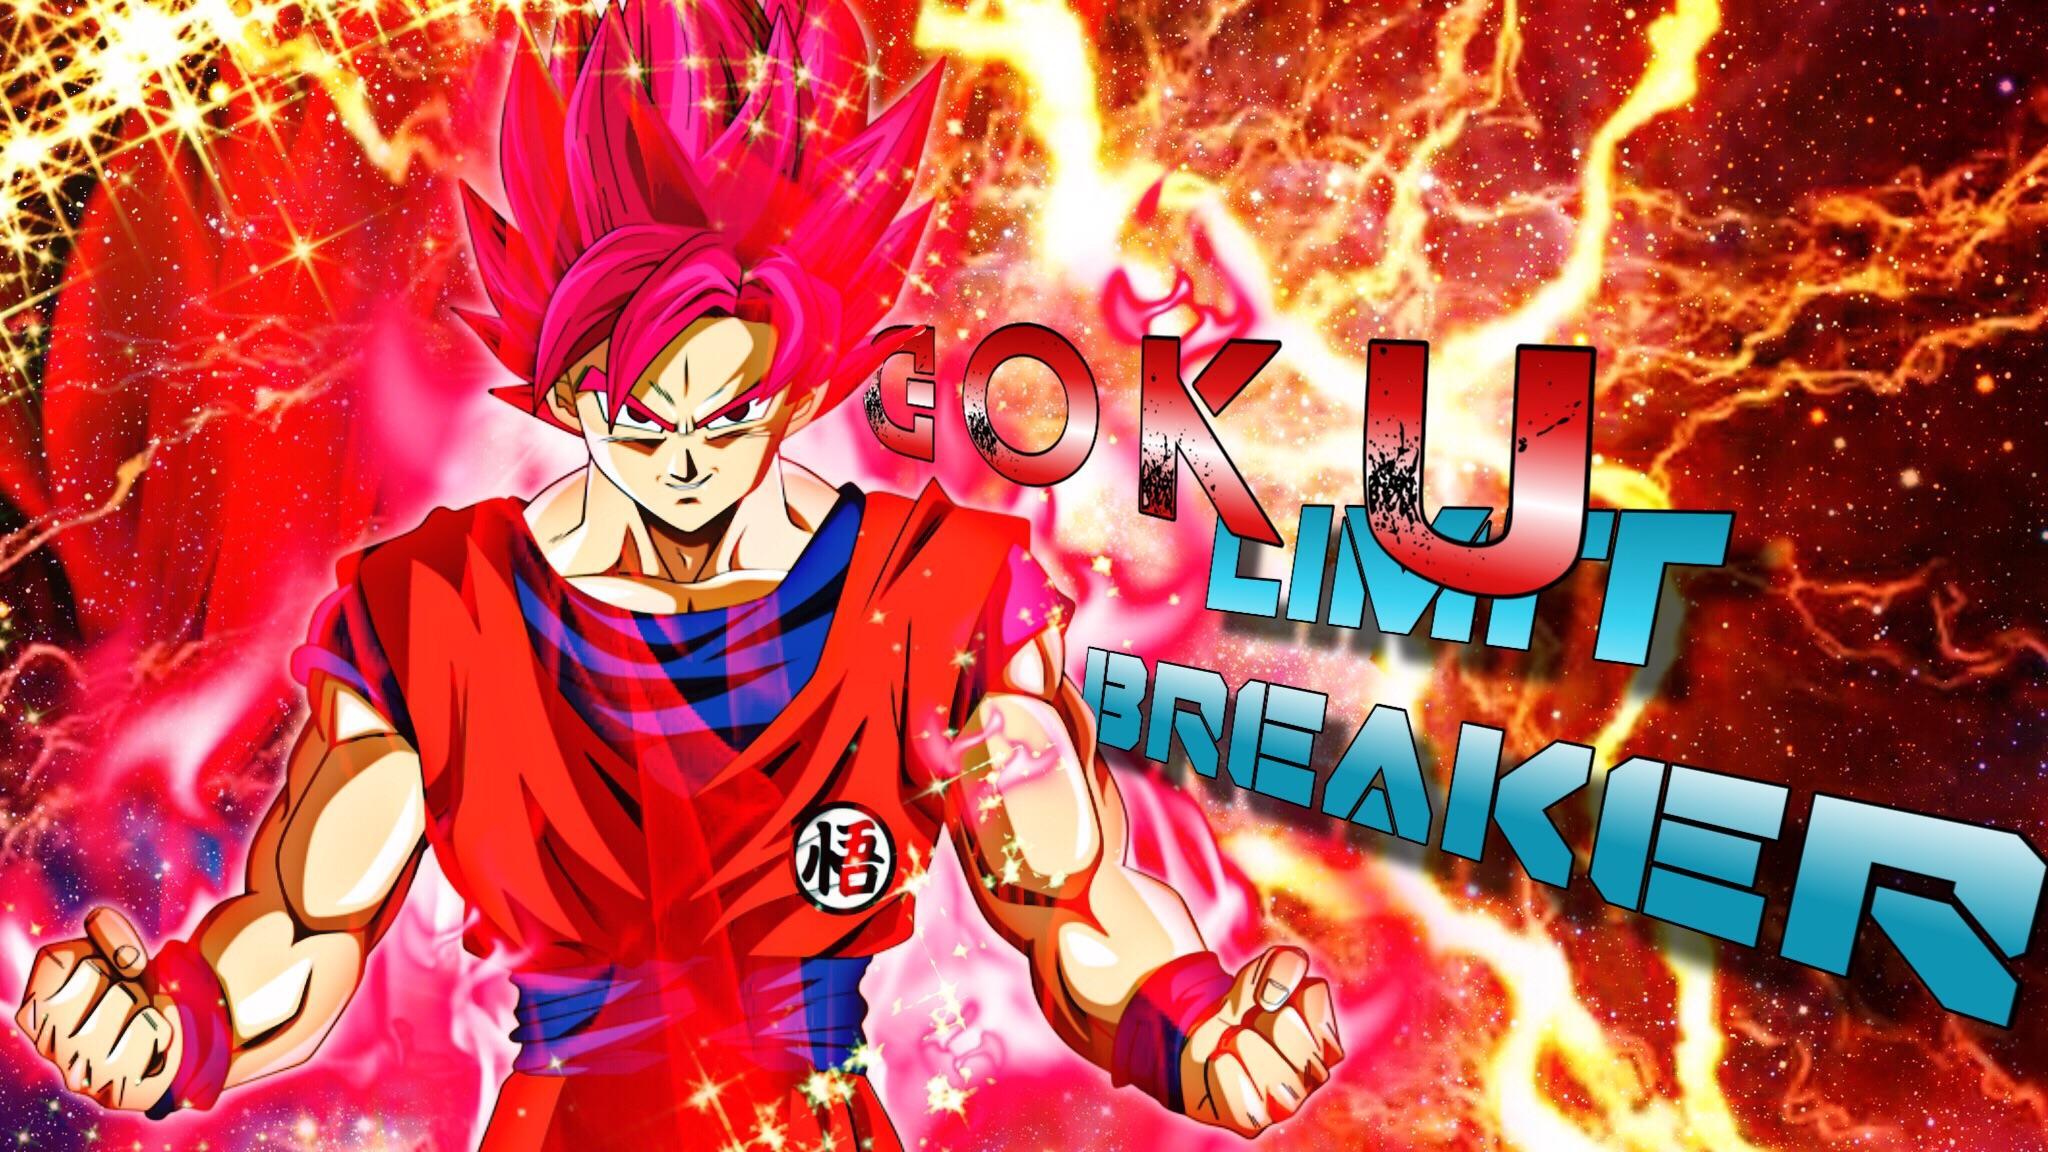 Fanart] [OC] Limit breaker Goku